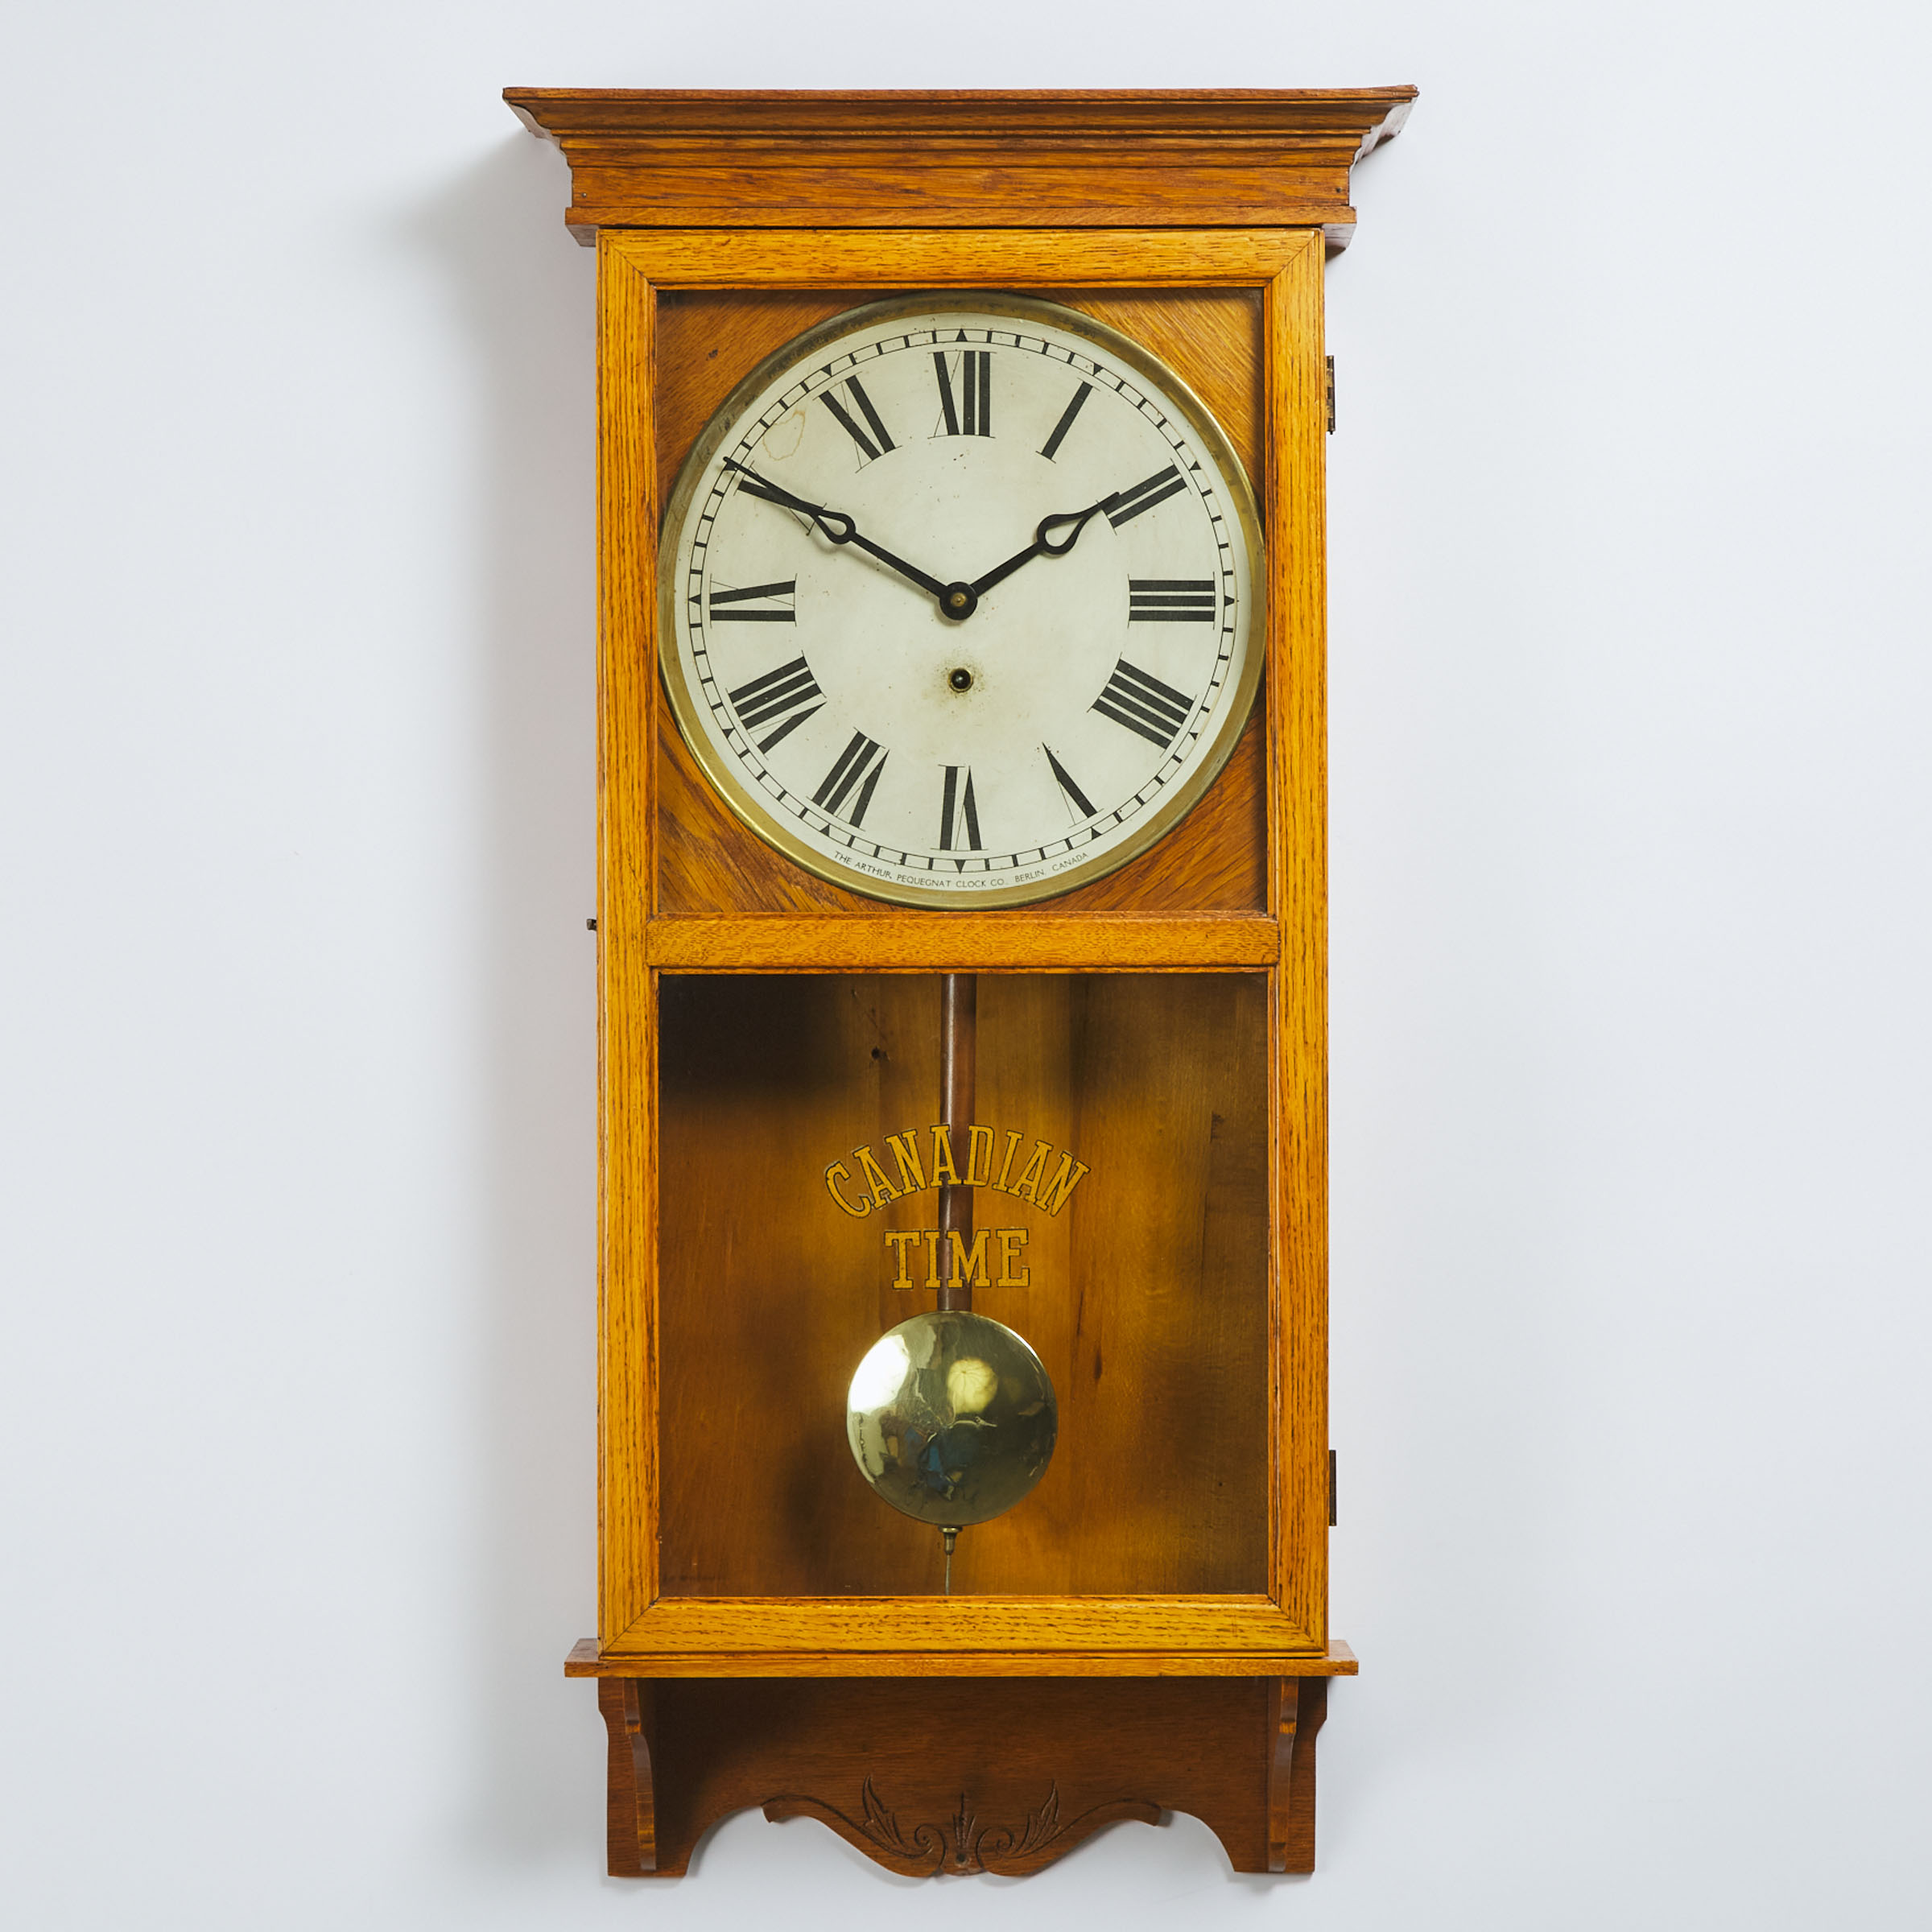 Arthur Pequegnat Clock Co Canadian 3aae36